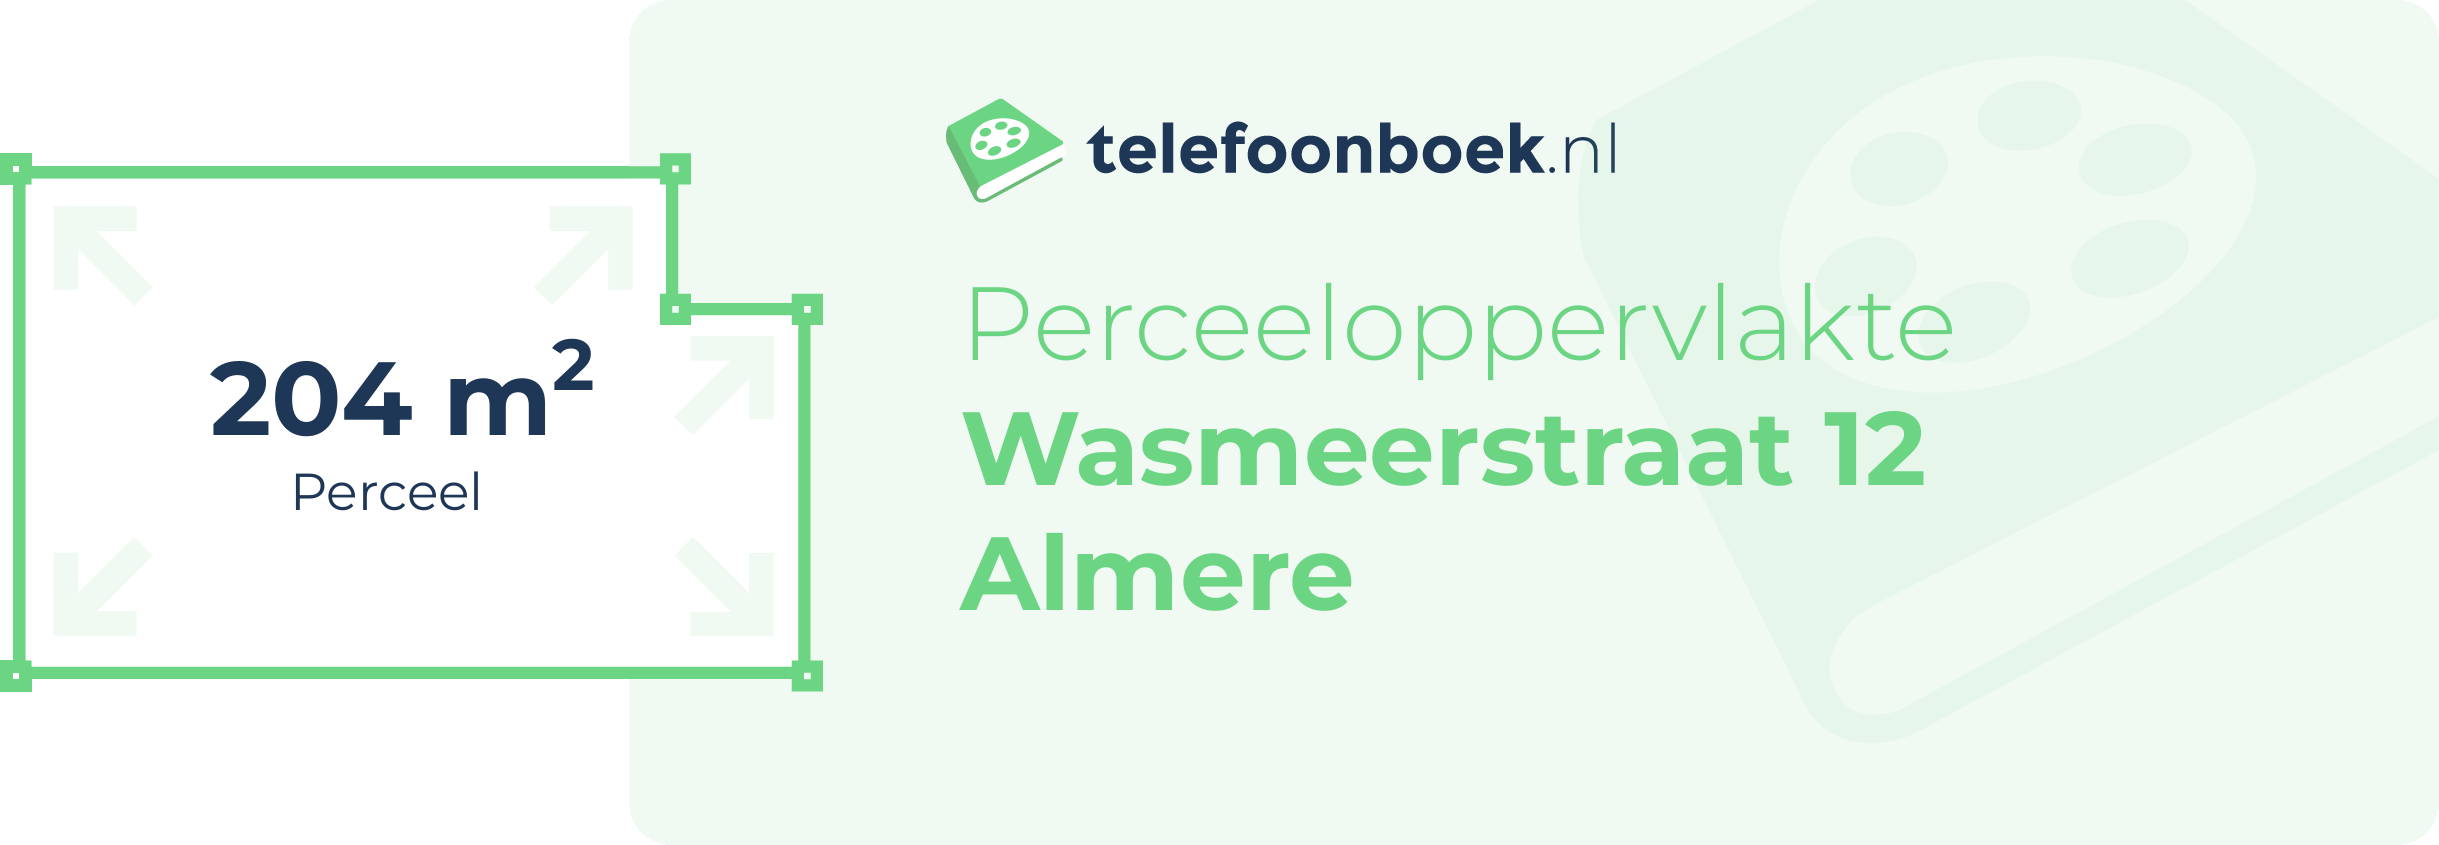 Perceeloppervlakte Wasmeerstraat 12 Almere